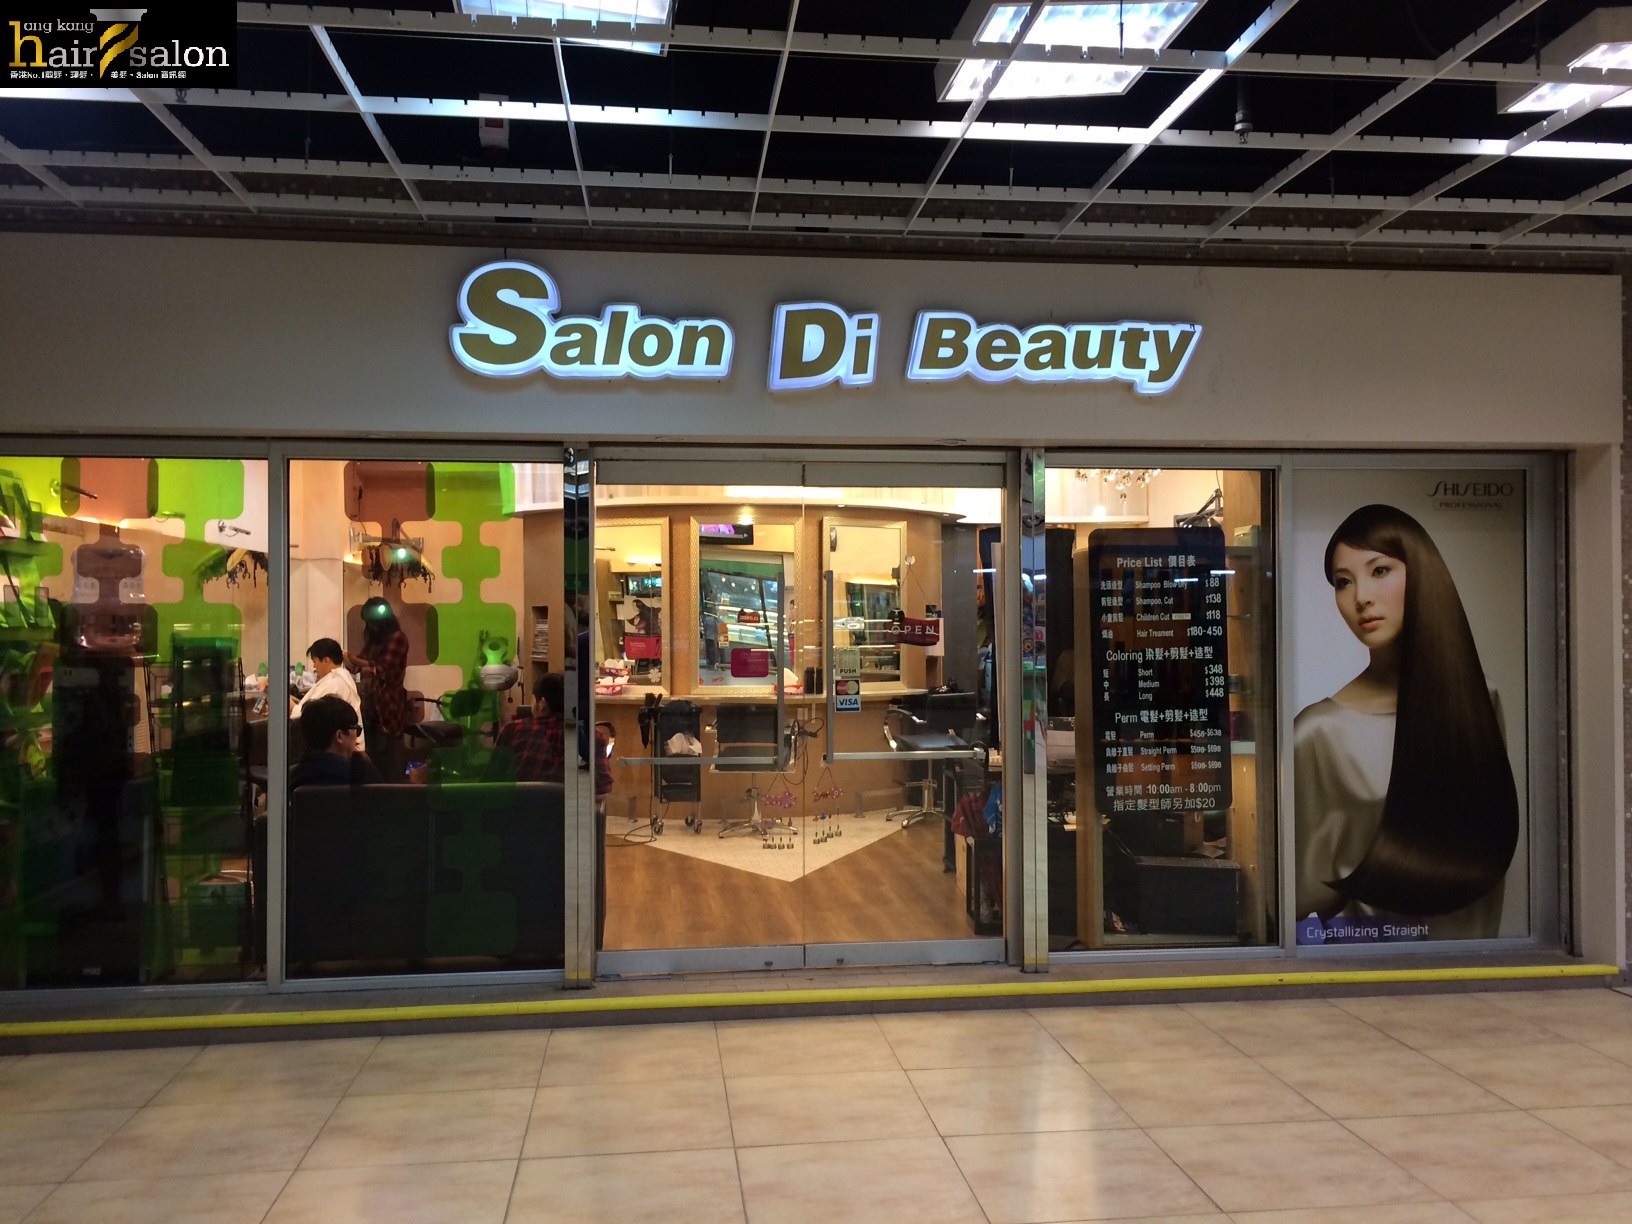 电发/负离子: Salon Di Beauty 集美軒髮廊 (龍蟠苑商場)